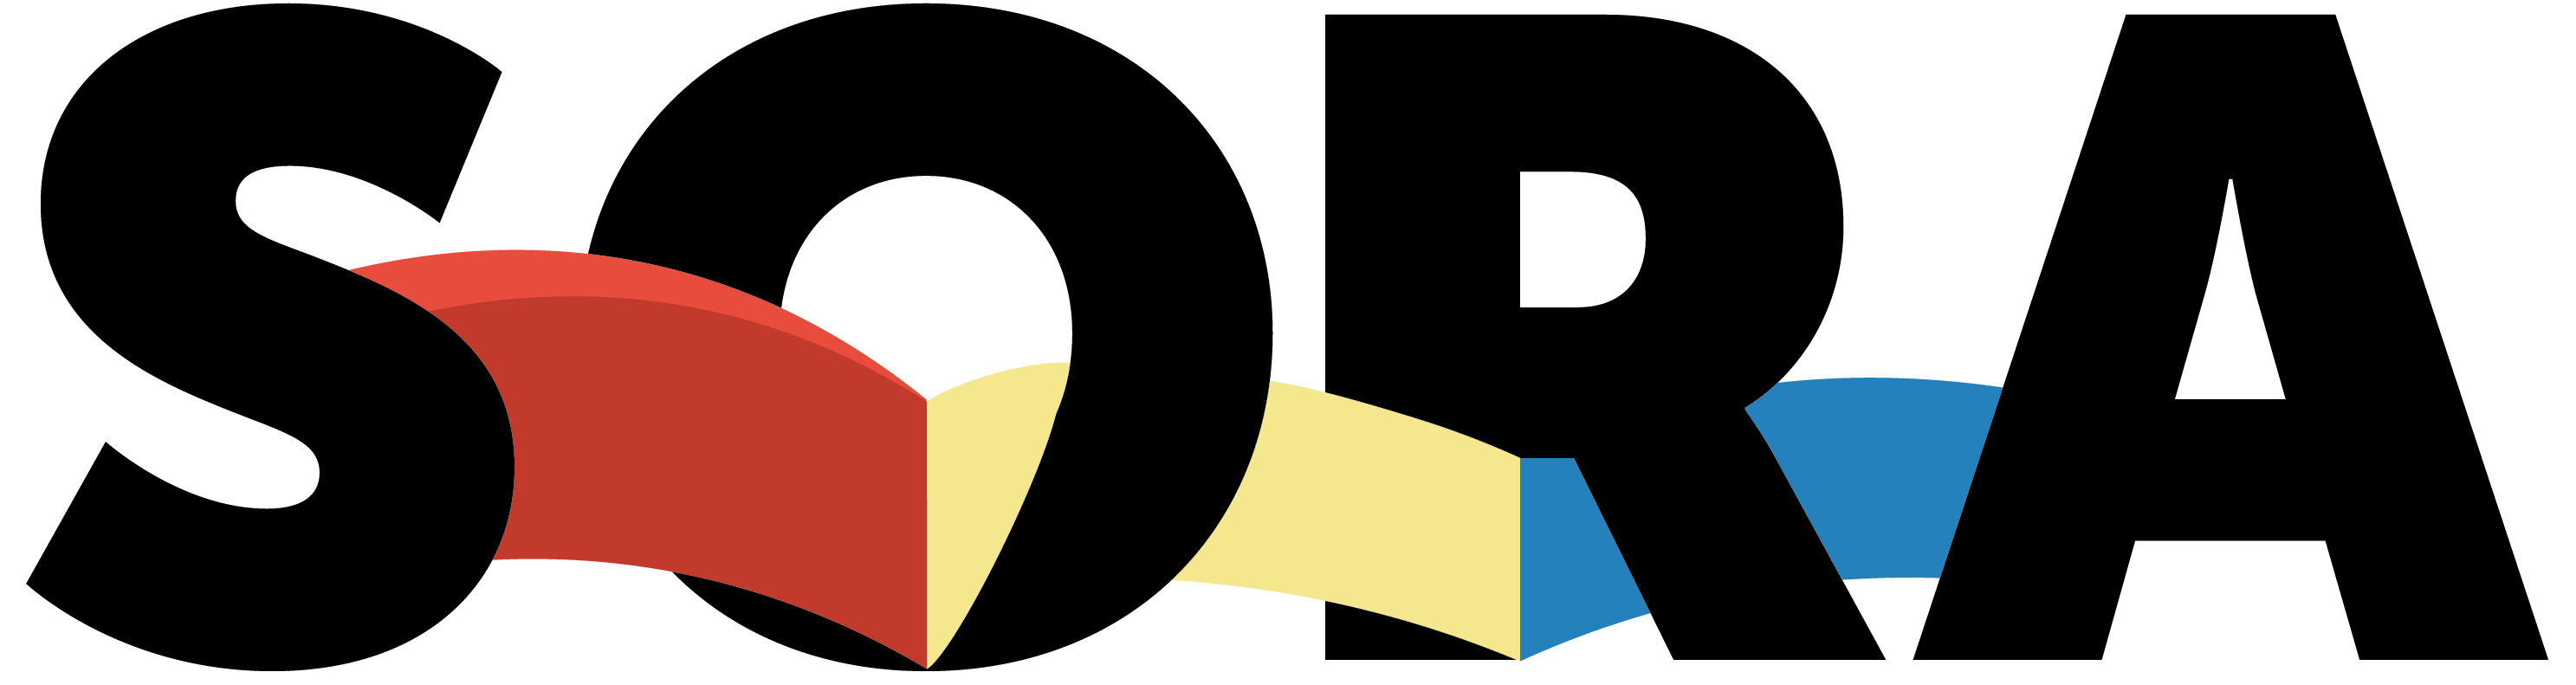 Sora Logo - Sora Schools – High School Built For You